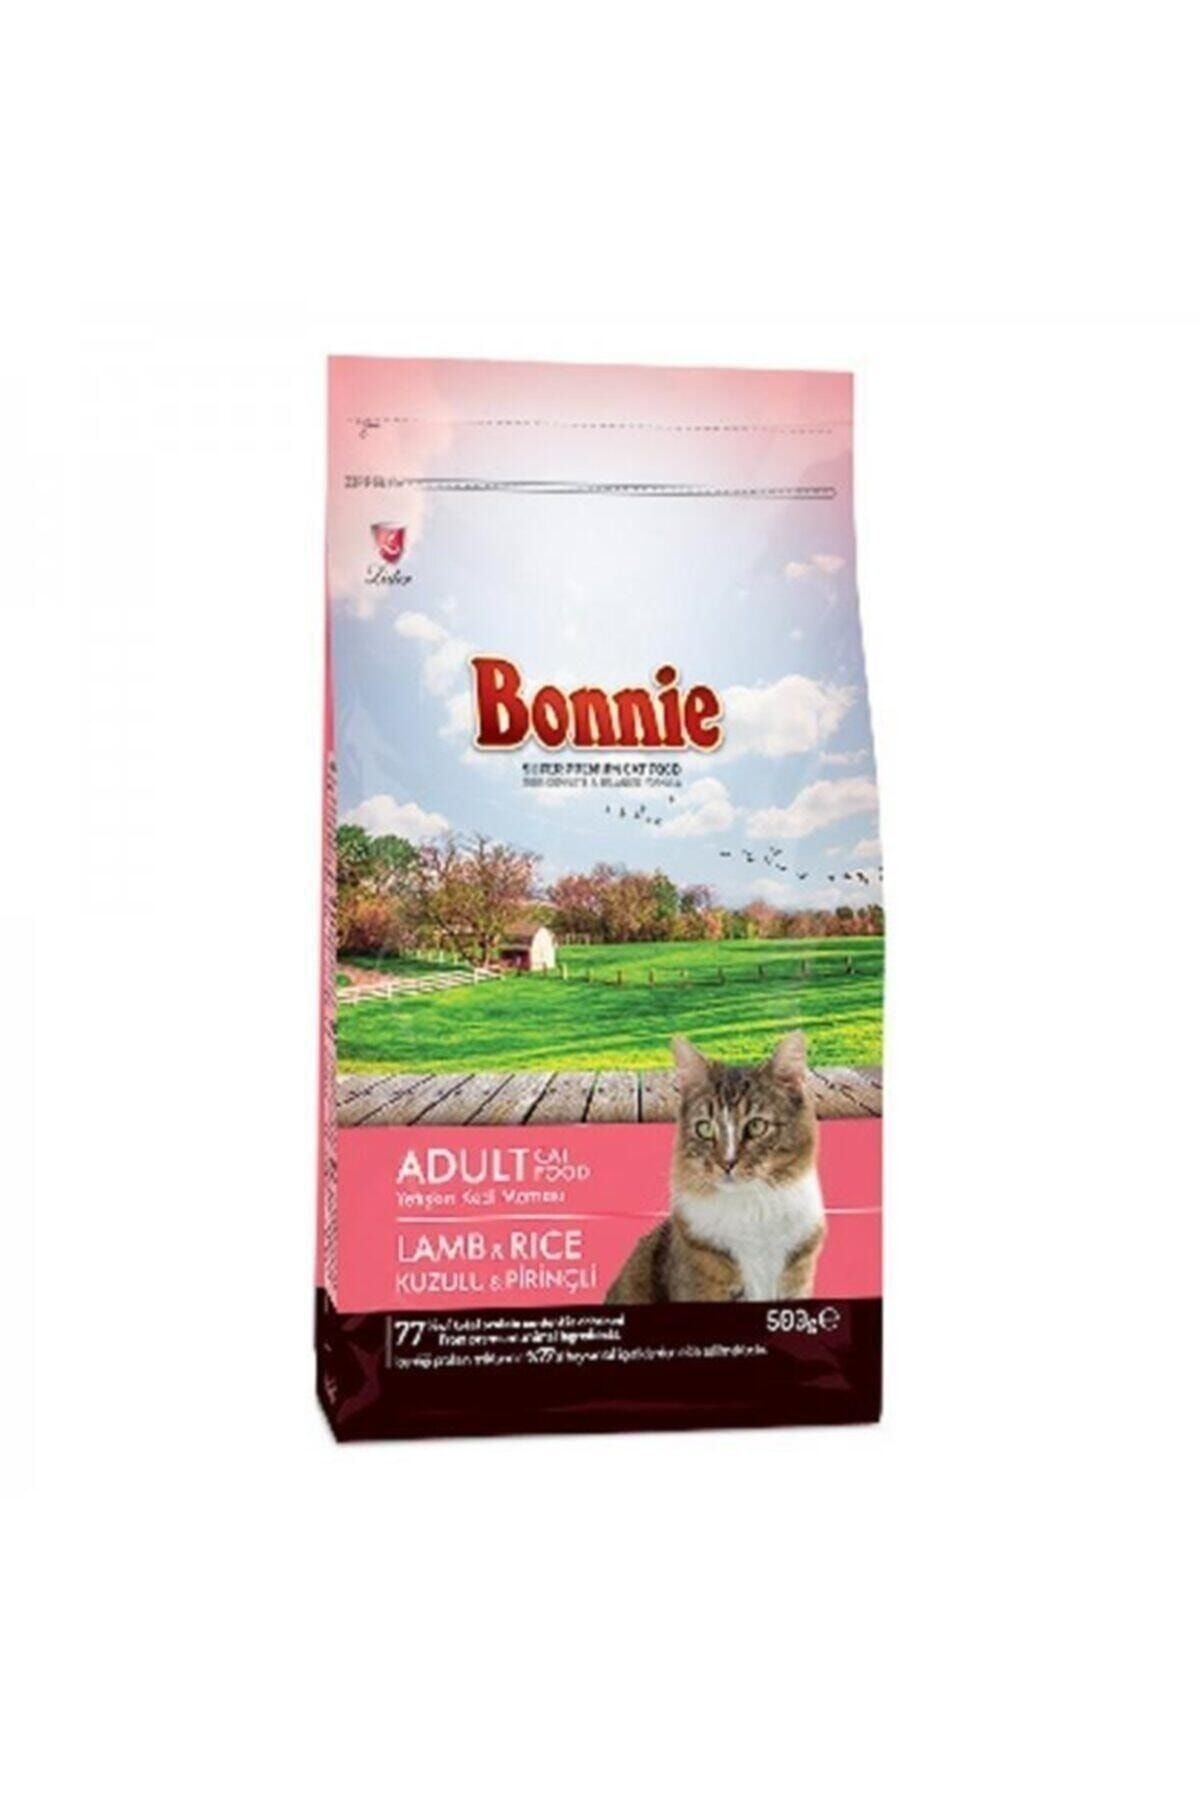 Bonnie Kuzulu & Pirinçli Yetişkin Kedi Maması 500 gr.